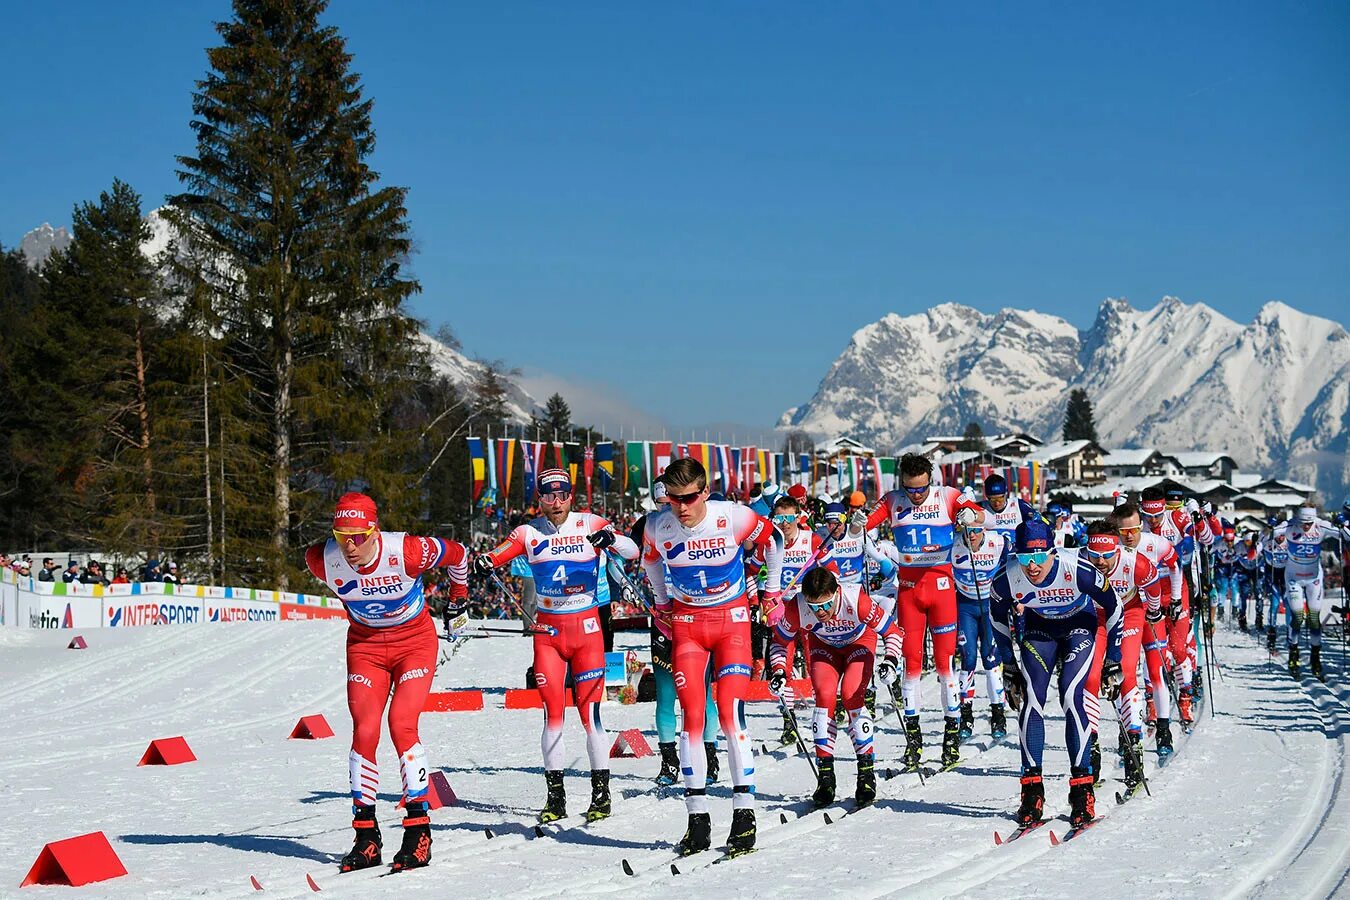 Горнолыжный спорт в Австрии. Лыжный спорт в Австрии. ФИС лыжные гонки. Зимний спорт в Австрии. Центр зимнего спорта в австрии